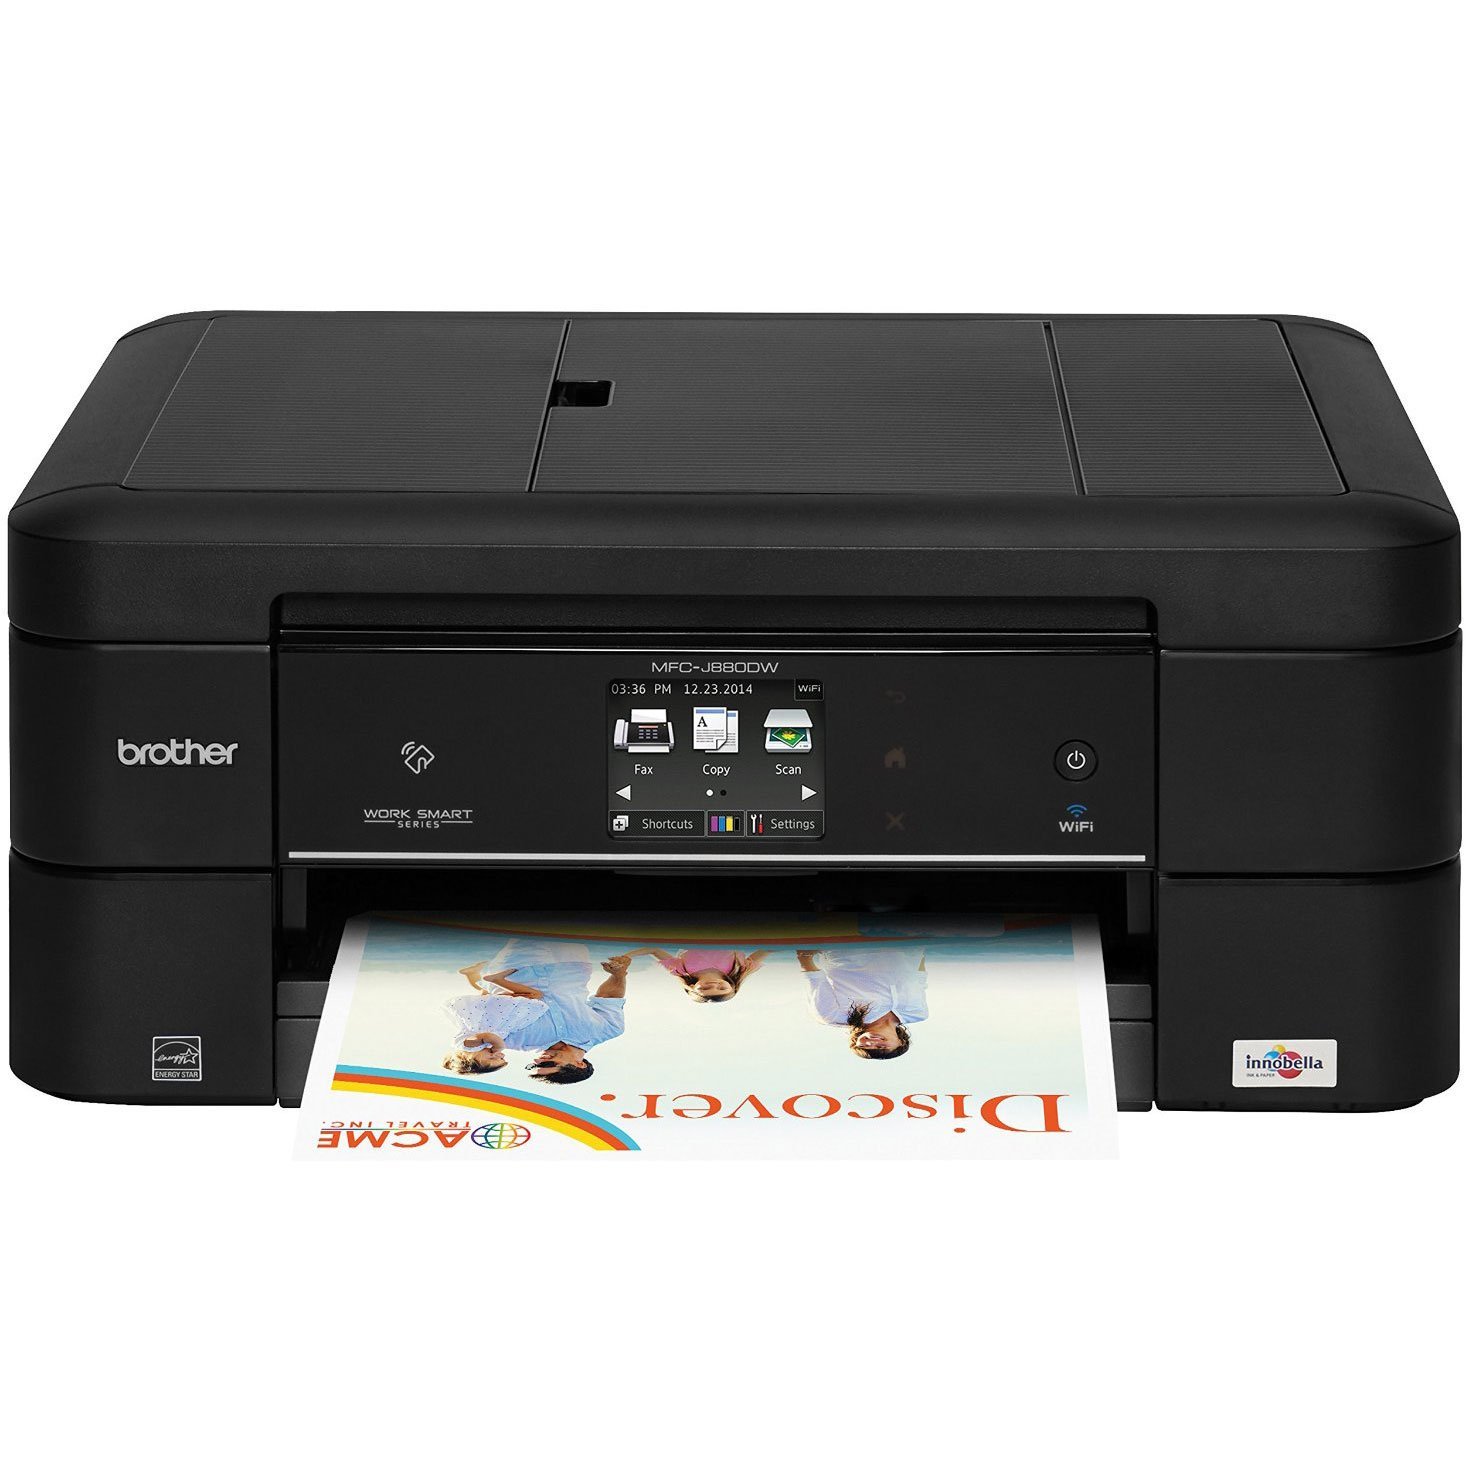 Brother Printer Brother MFC-J885DW Work Smart Inkjet Al...